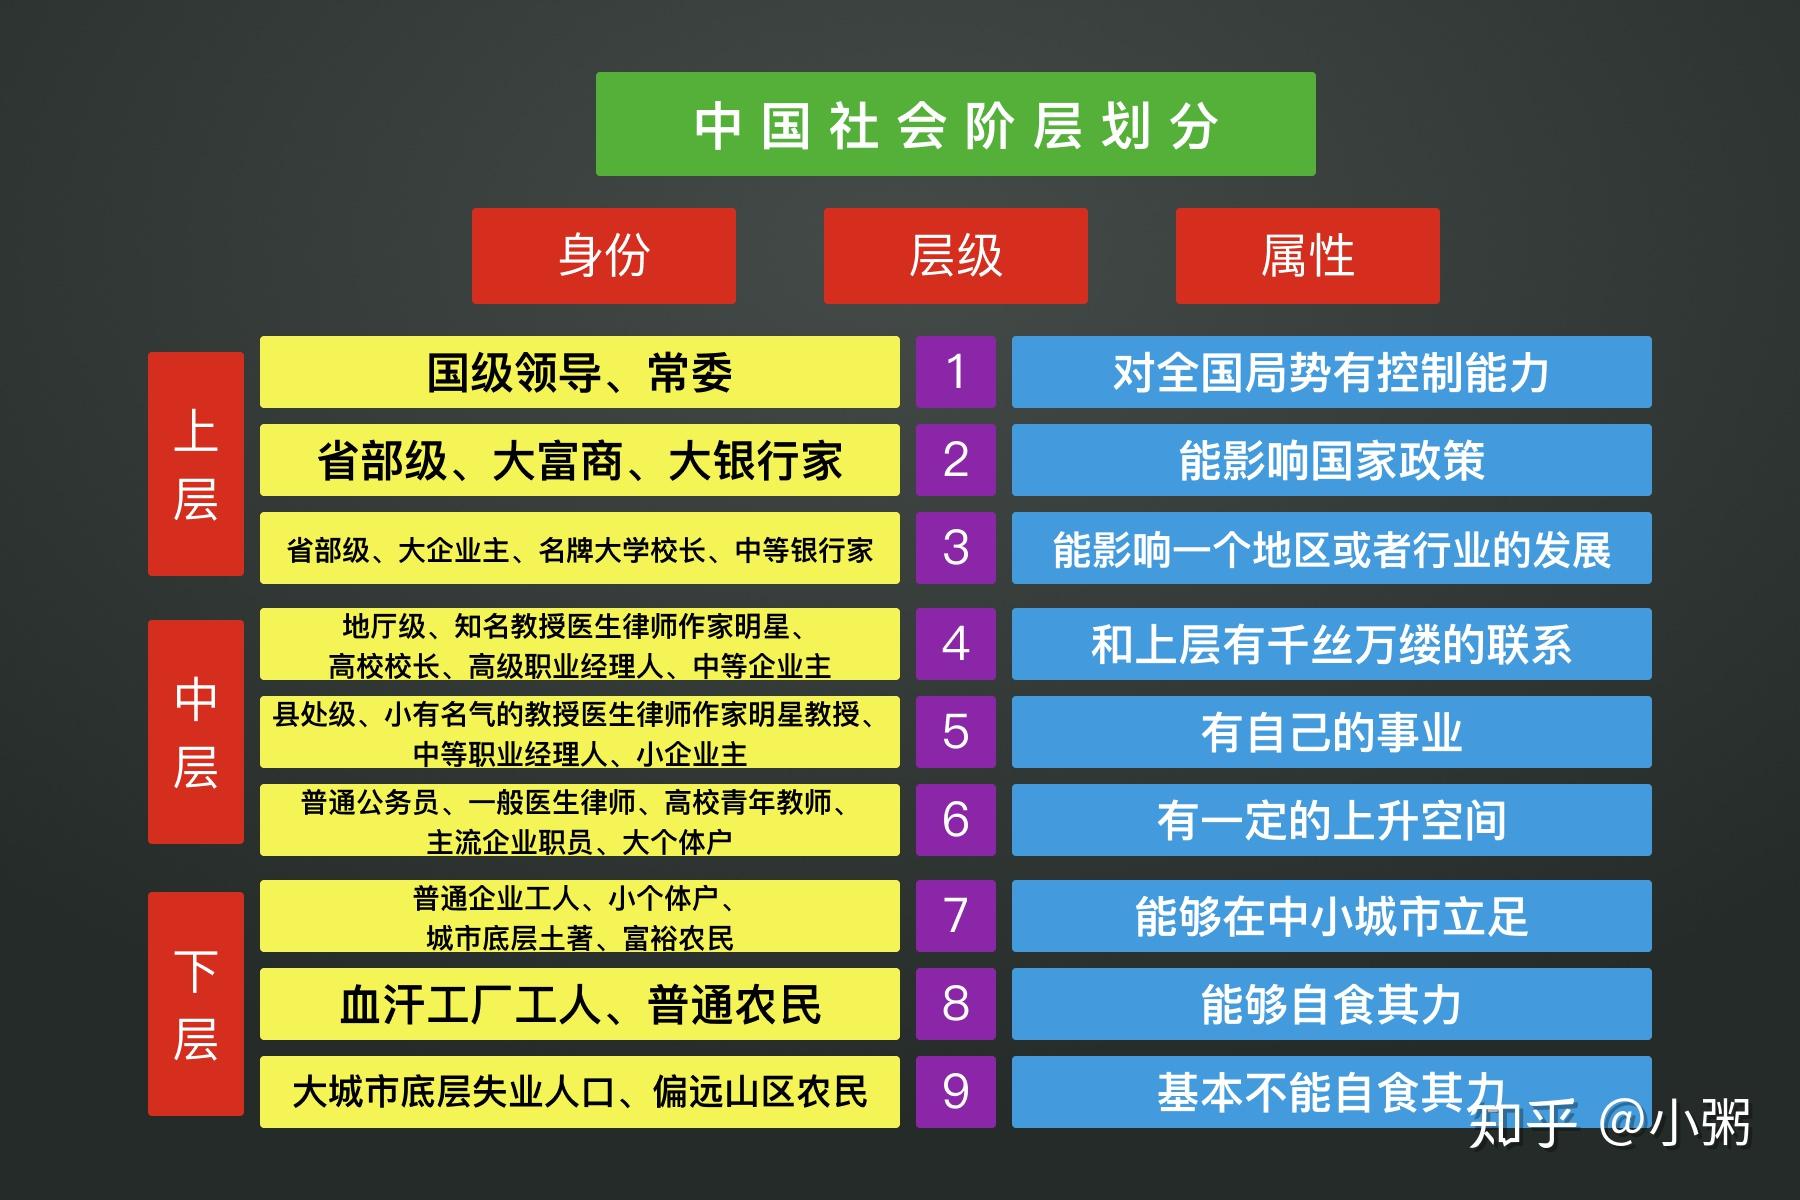 最近网络上出了一个中国社会最新的阶层划分模型,即是通过枚举职业的